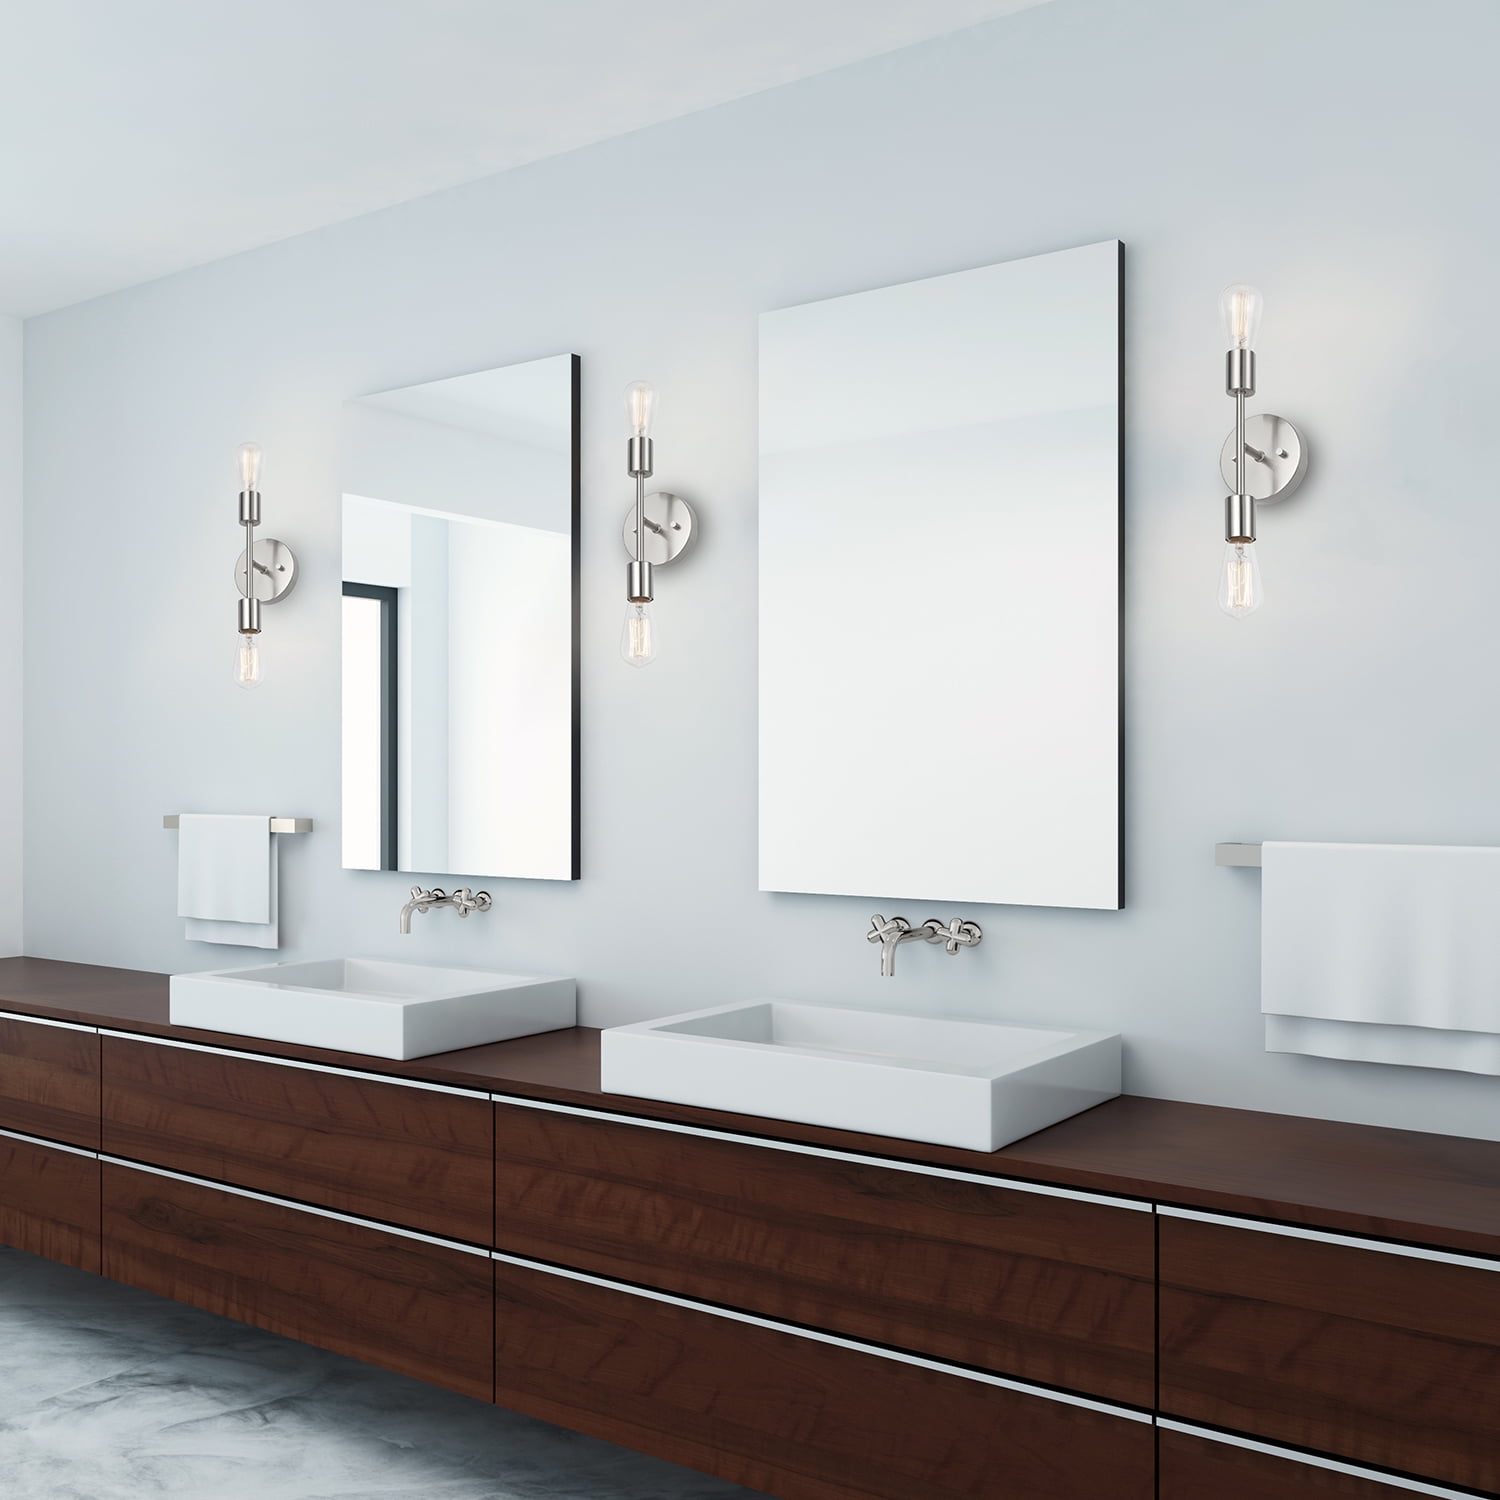 2-Light Better Homes & Gardens Bathroom Vanity Fixture (Satin Nickel) $7.38  + Free S&H w/ Walmart+ or $35+